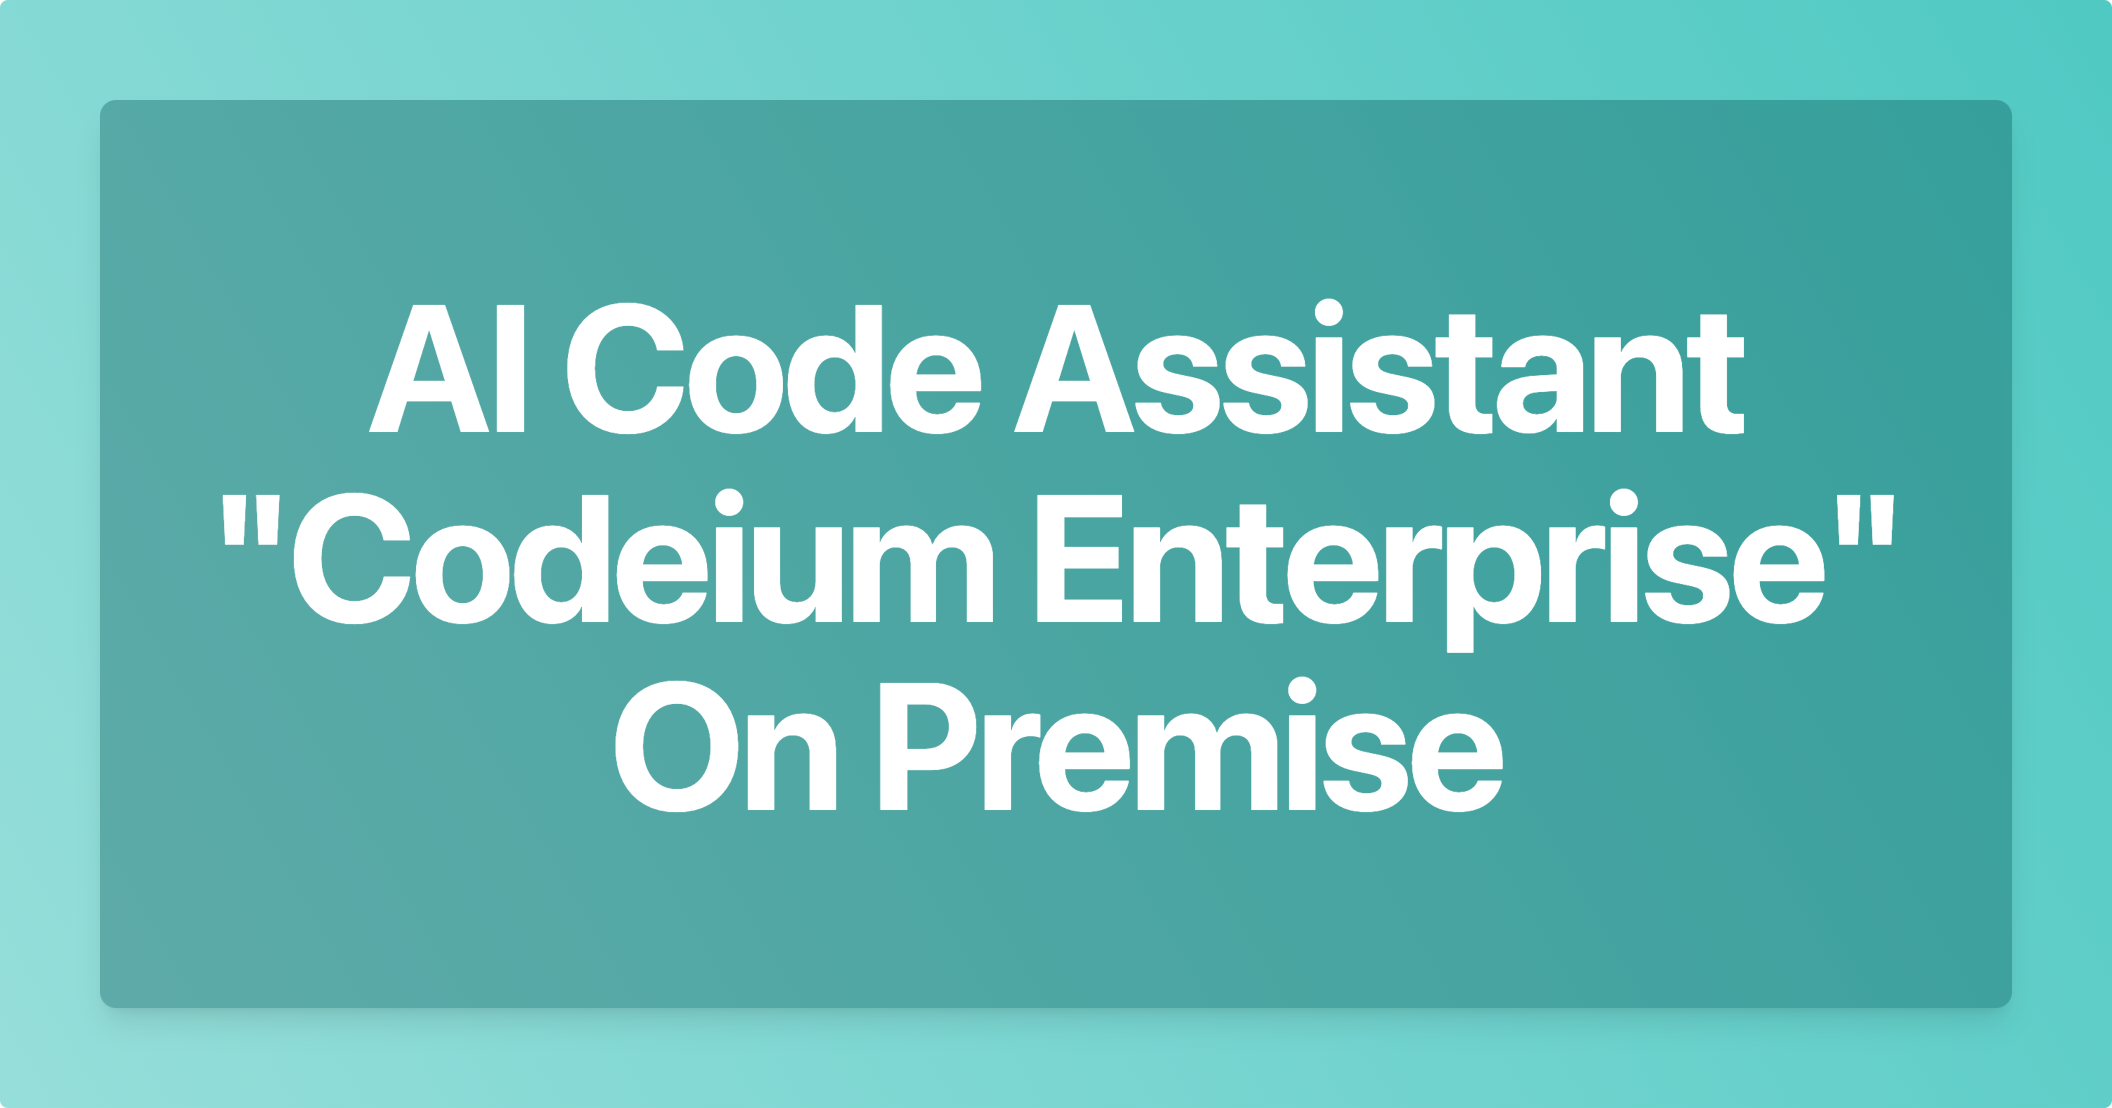 AI Code Assistant Codeium Enterprise On Premise
